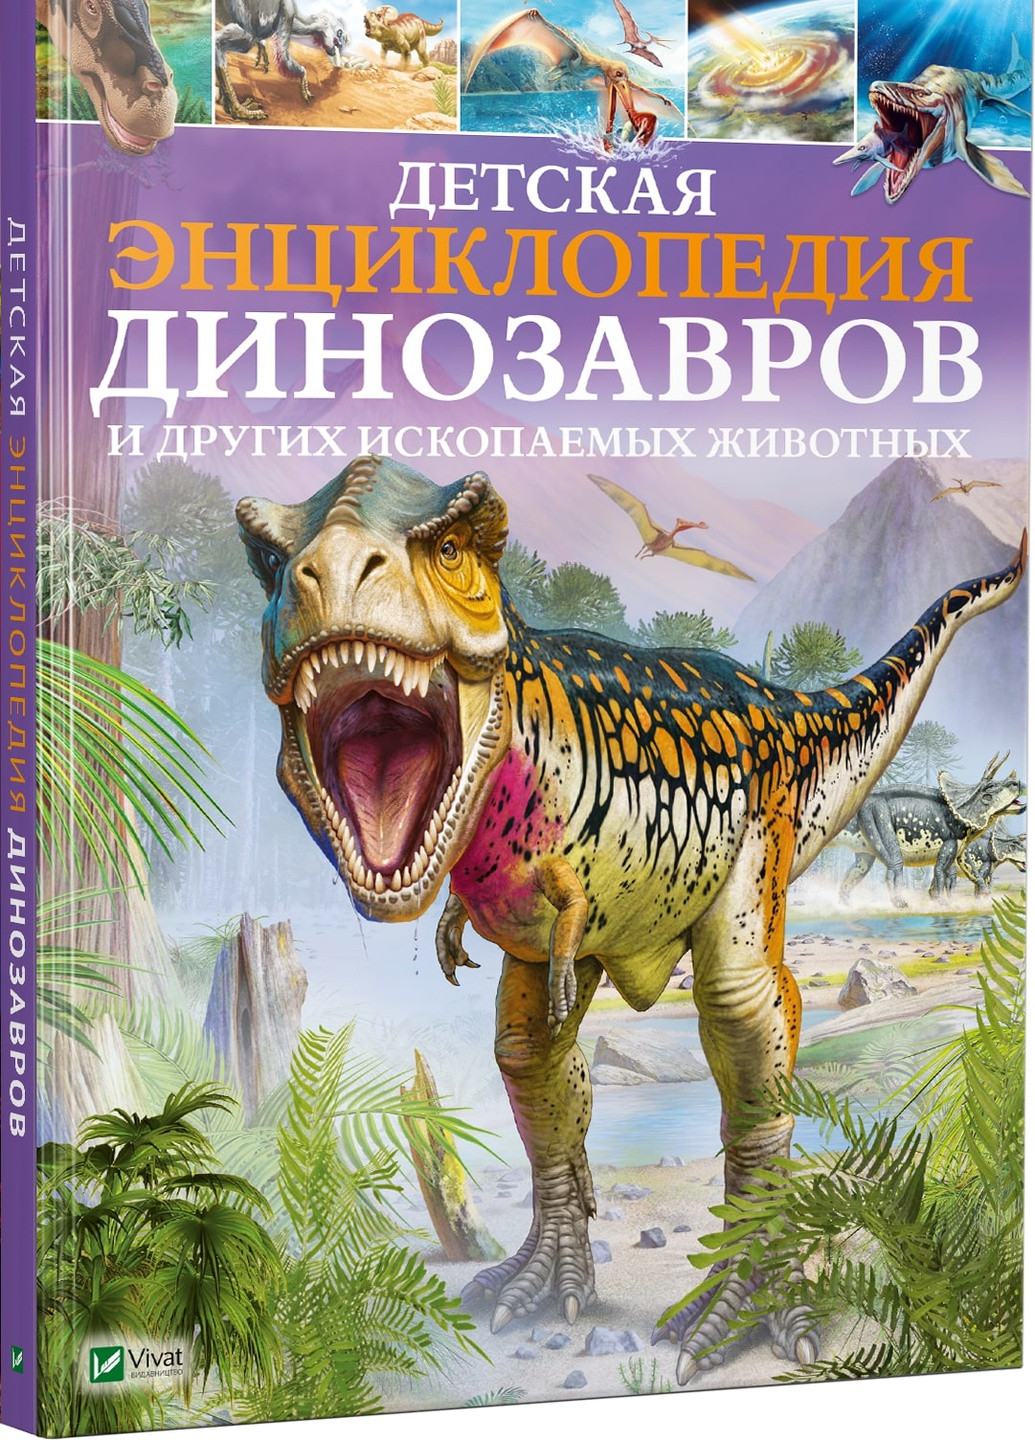 Книга "Детская энциклопедия динозавров и других ископаемых животных" Vivat (253189671)